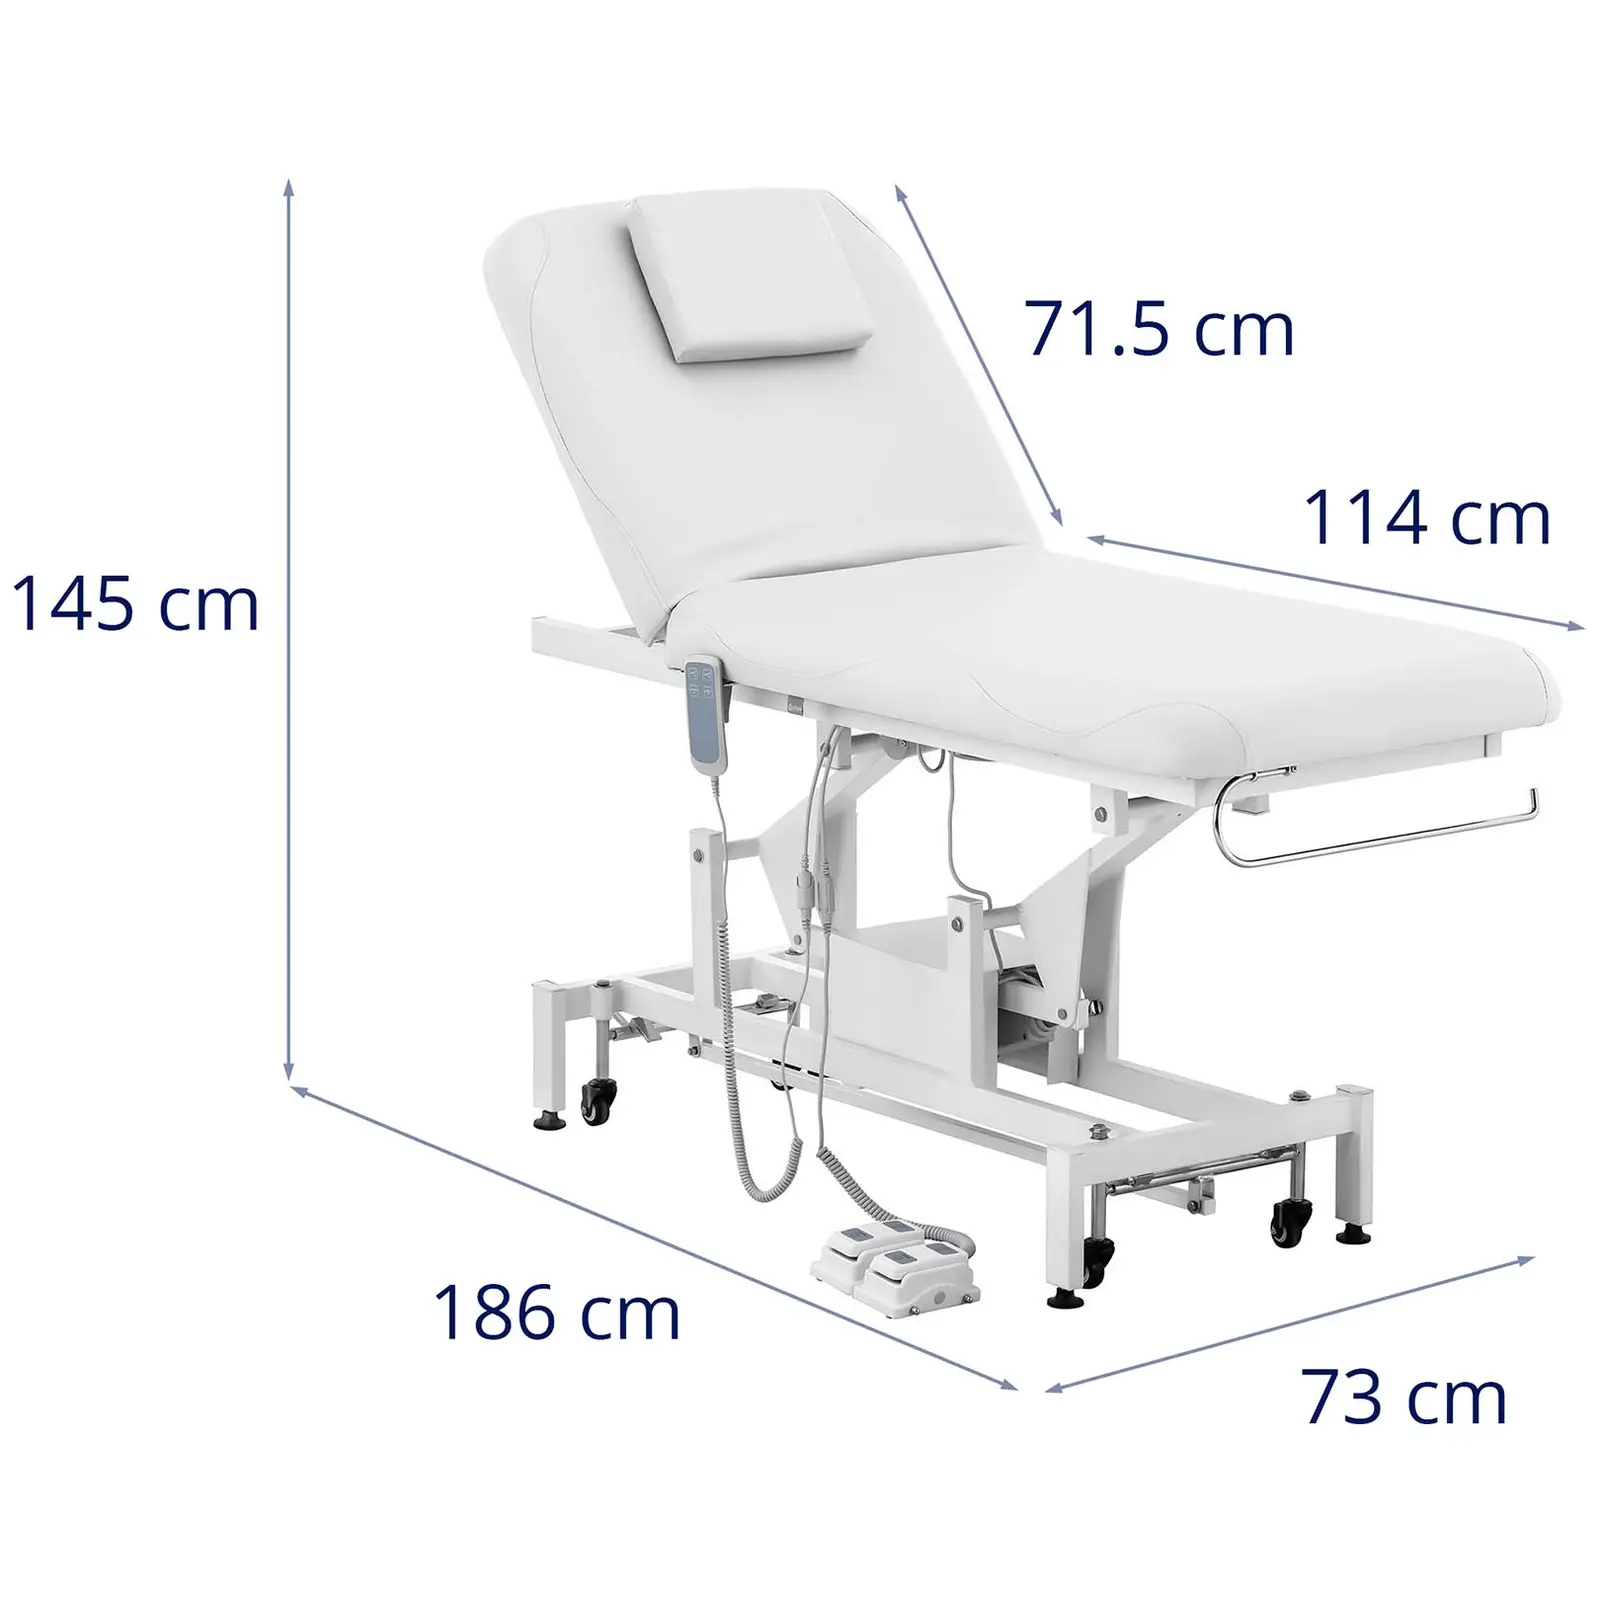 Table de massage - électrique - 2 moteurs - 200 kg - Blanc